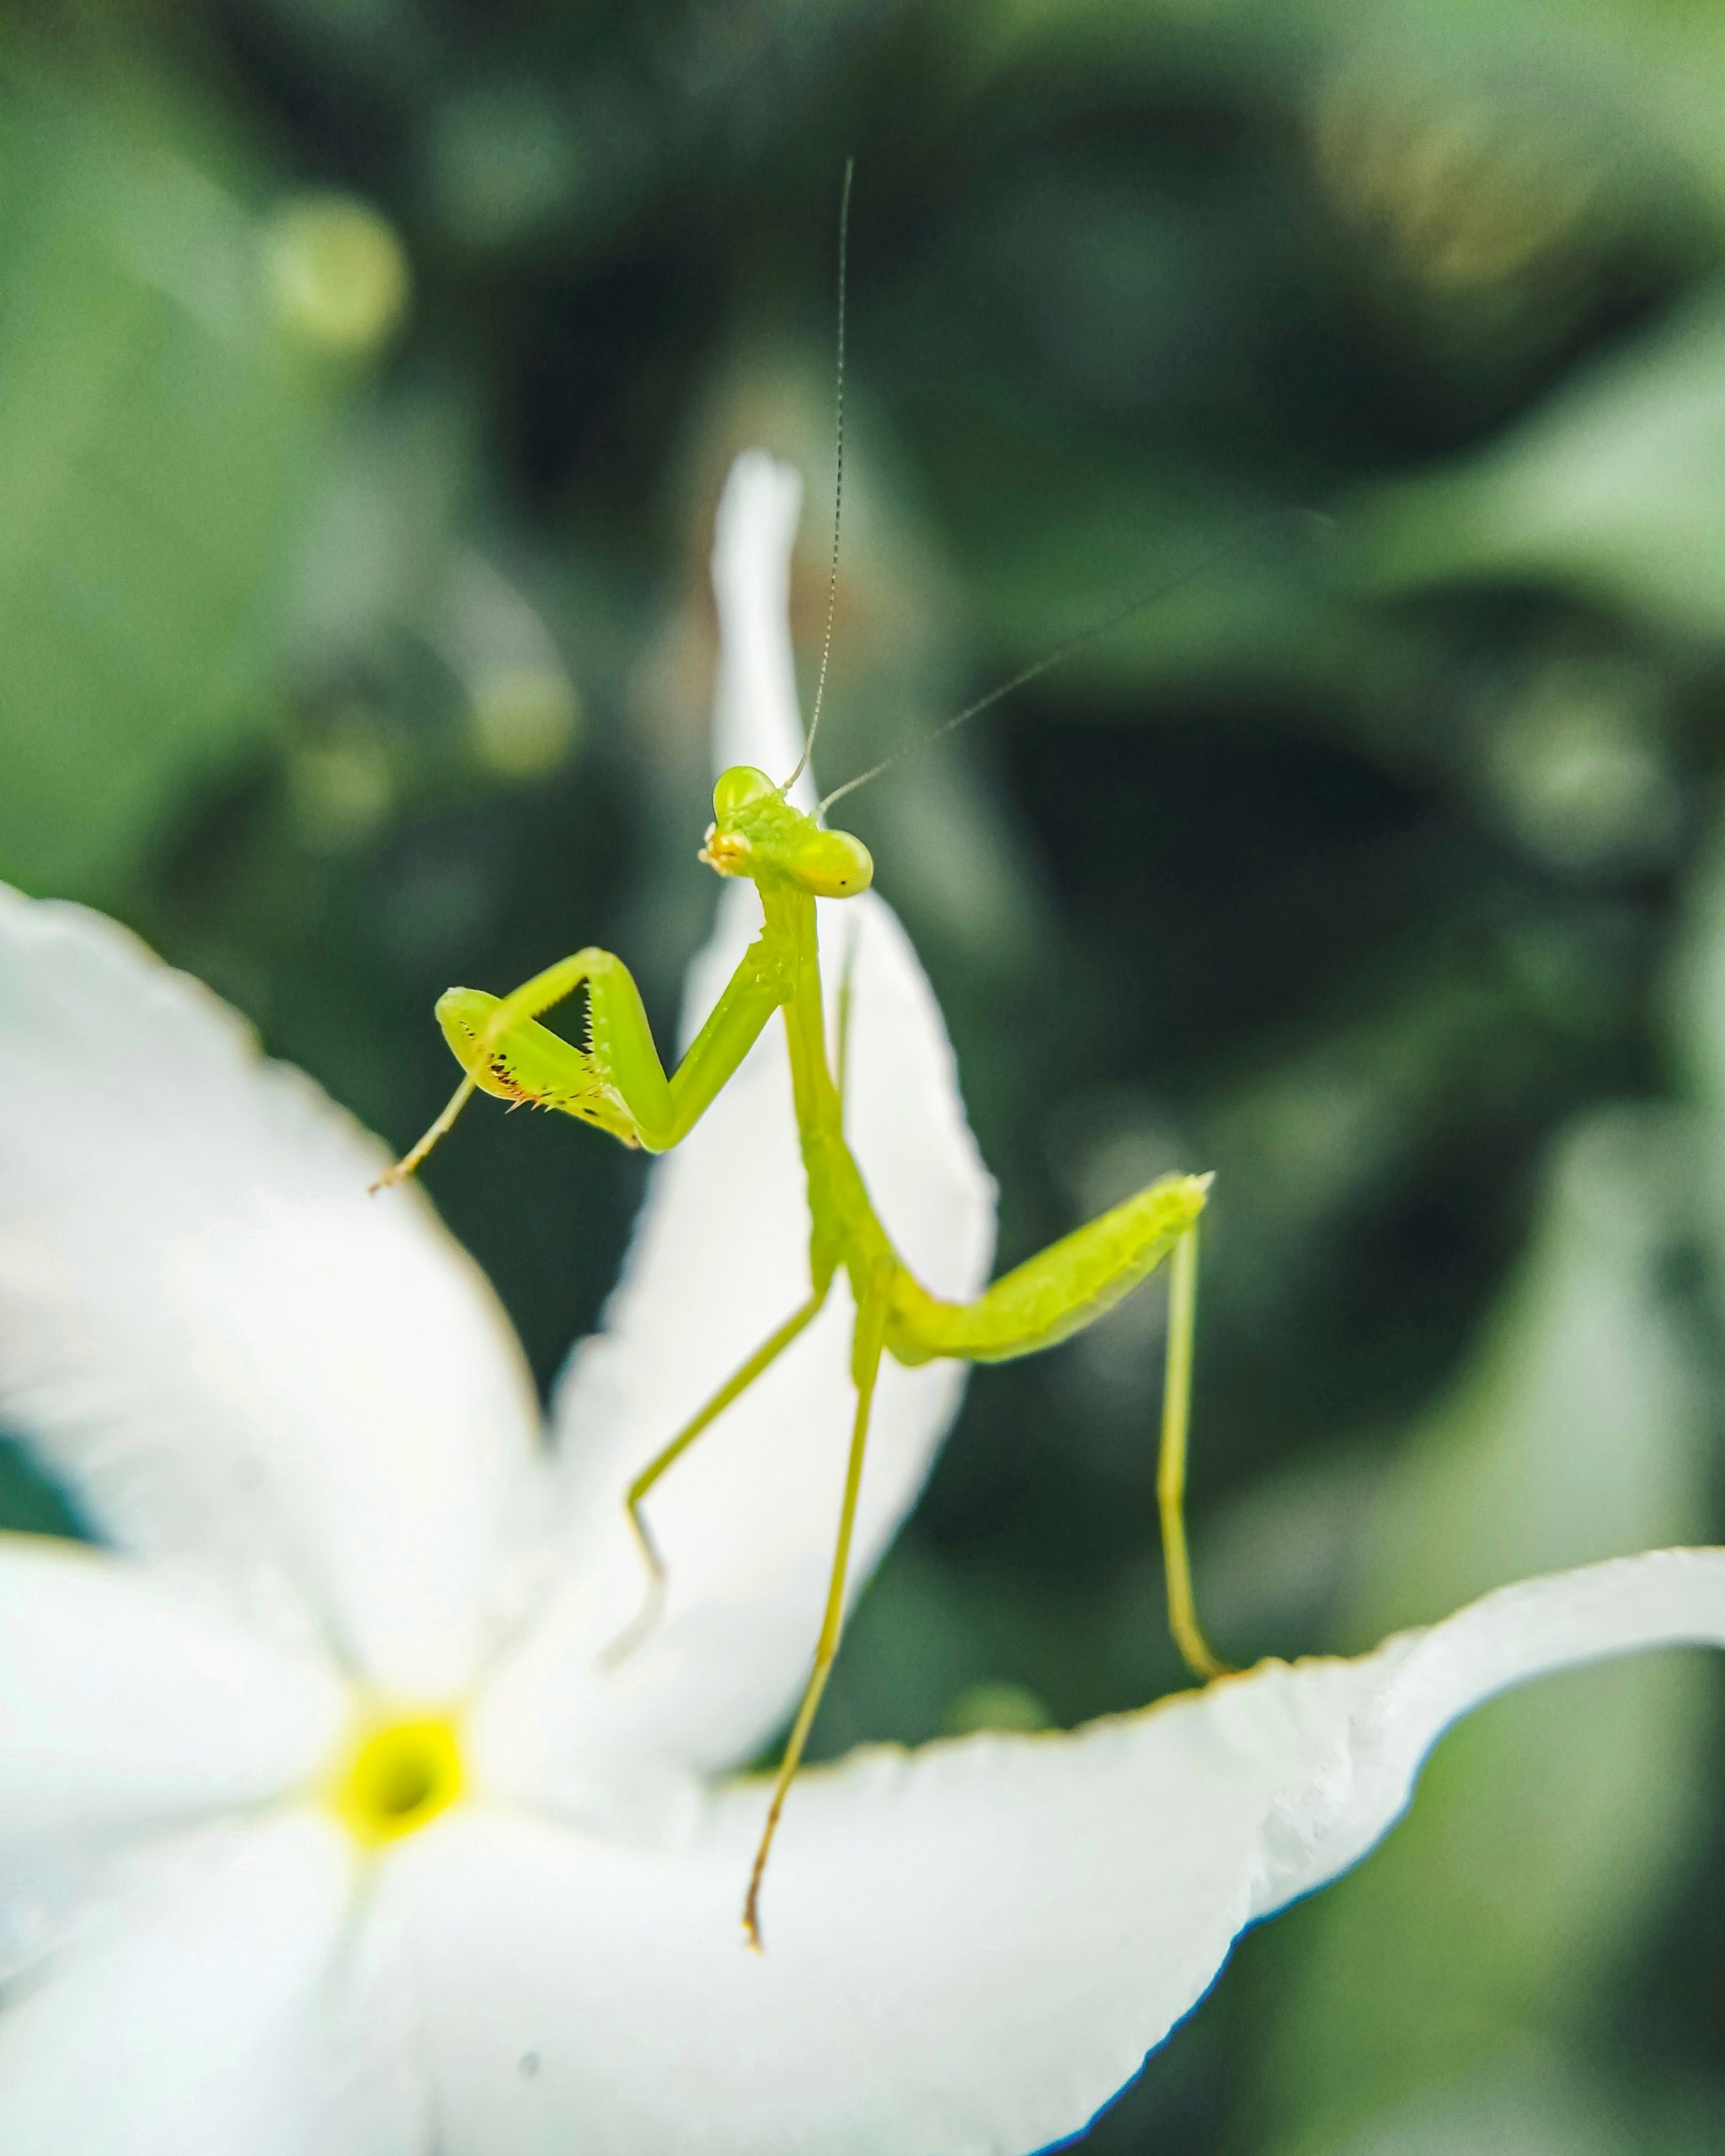 Praying mantis on white flower